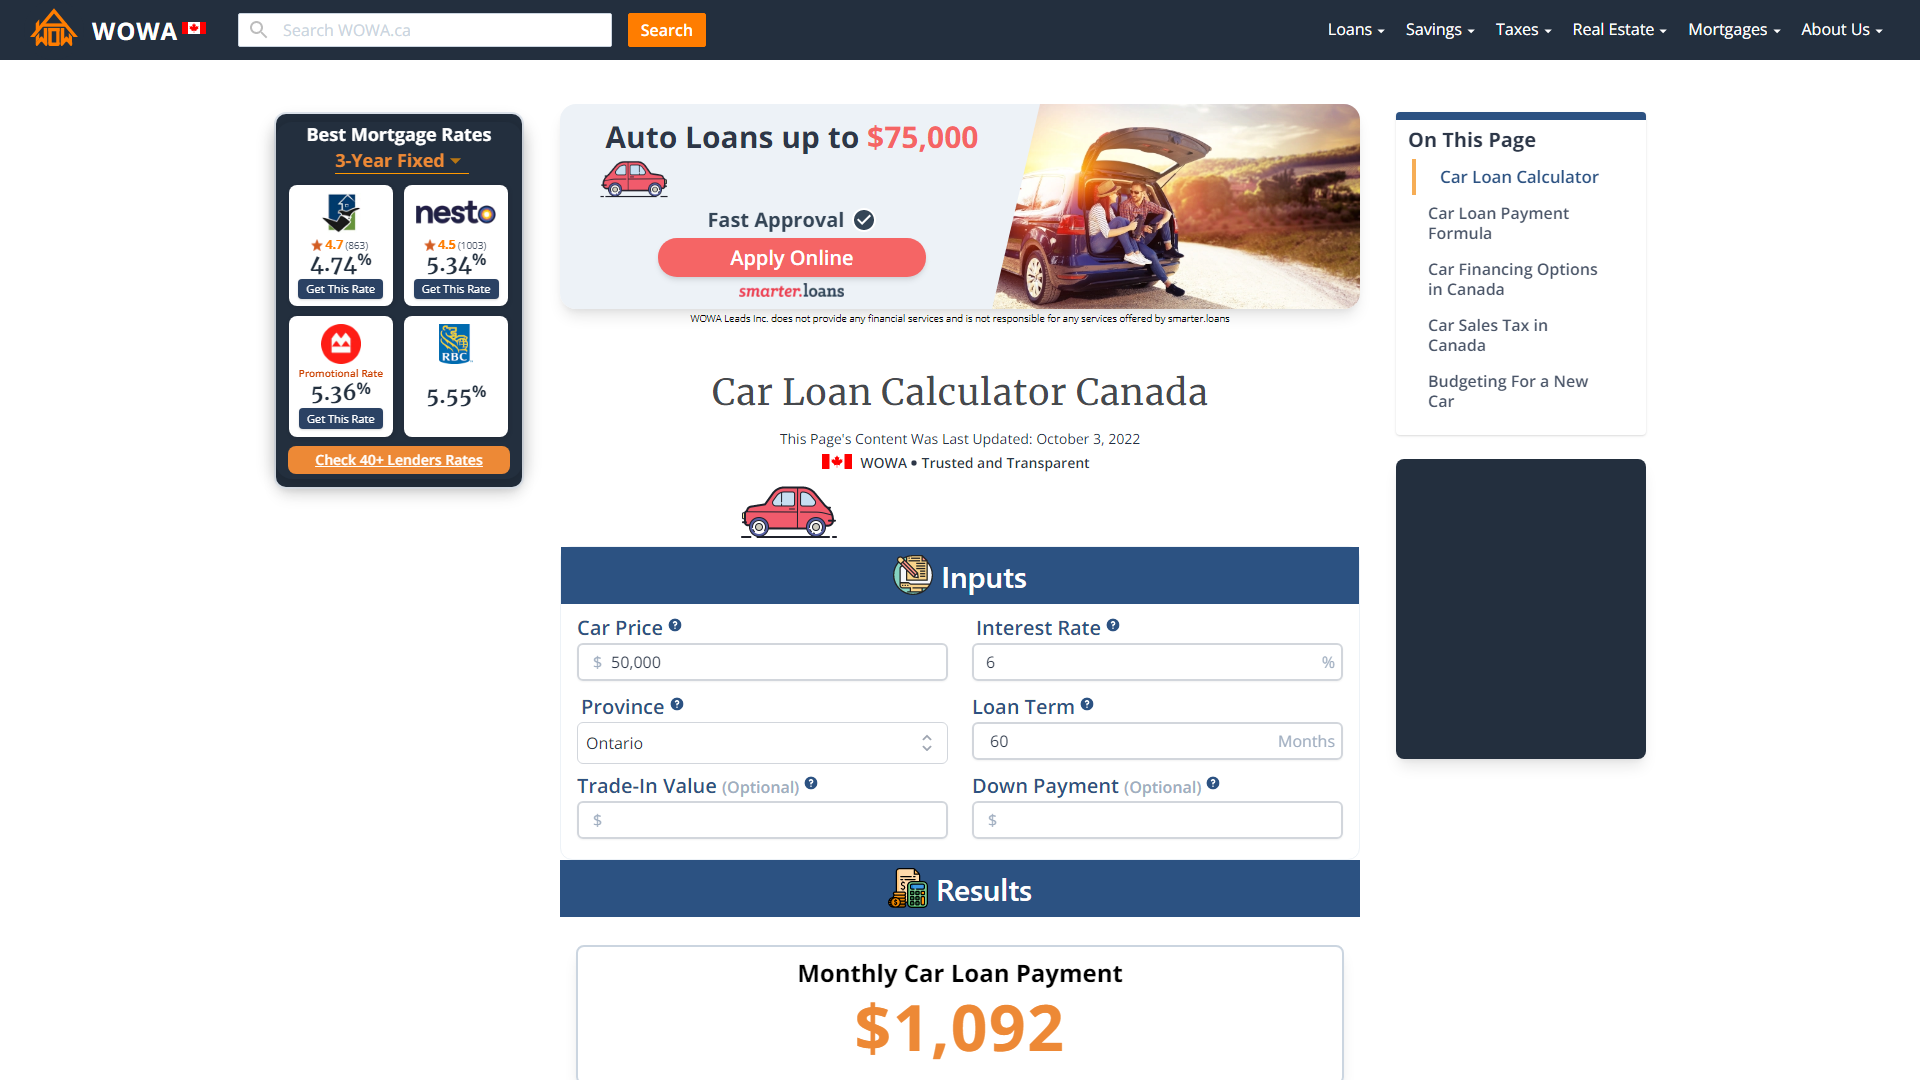 Car Loan Calculator Canada  WOWA.ca